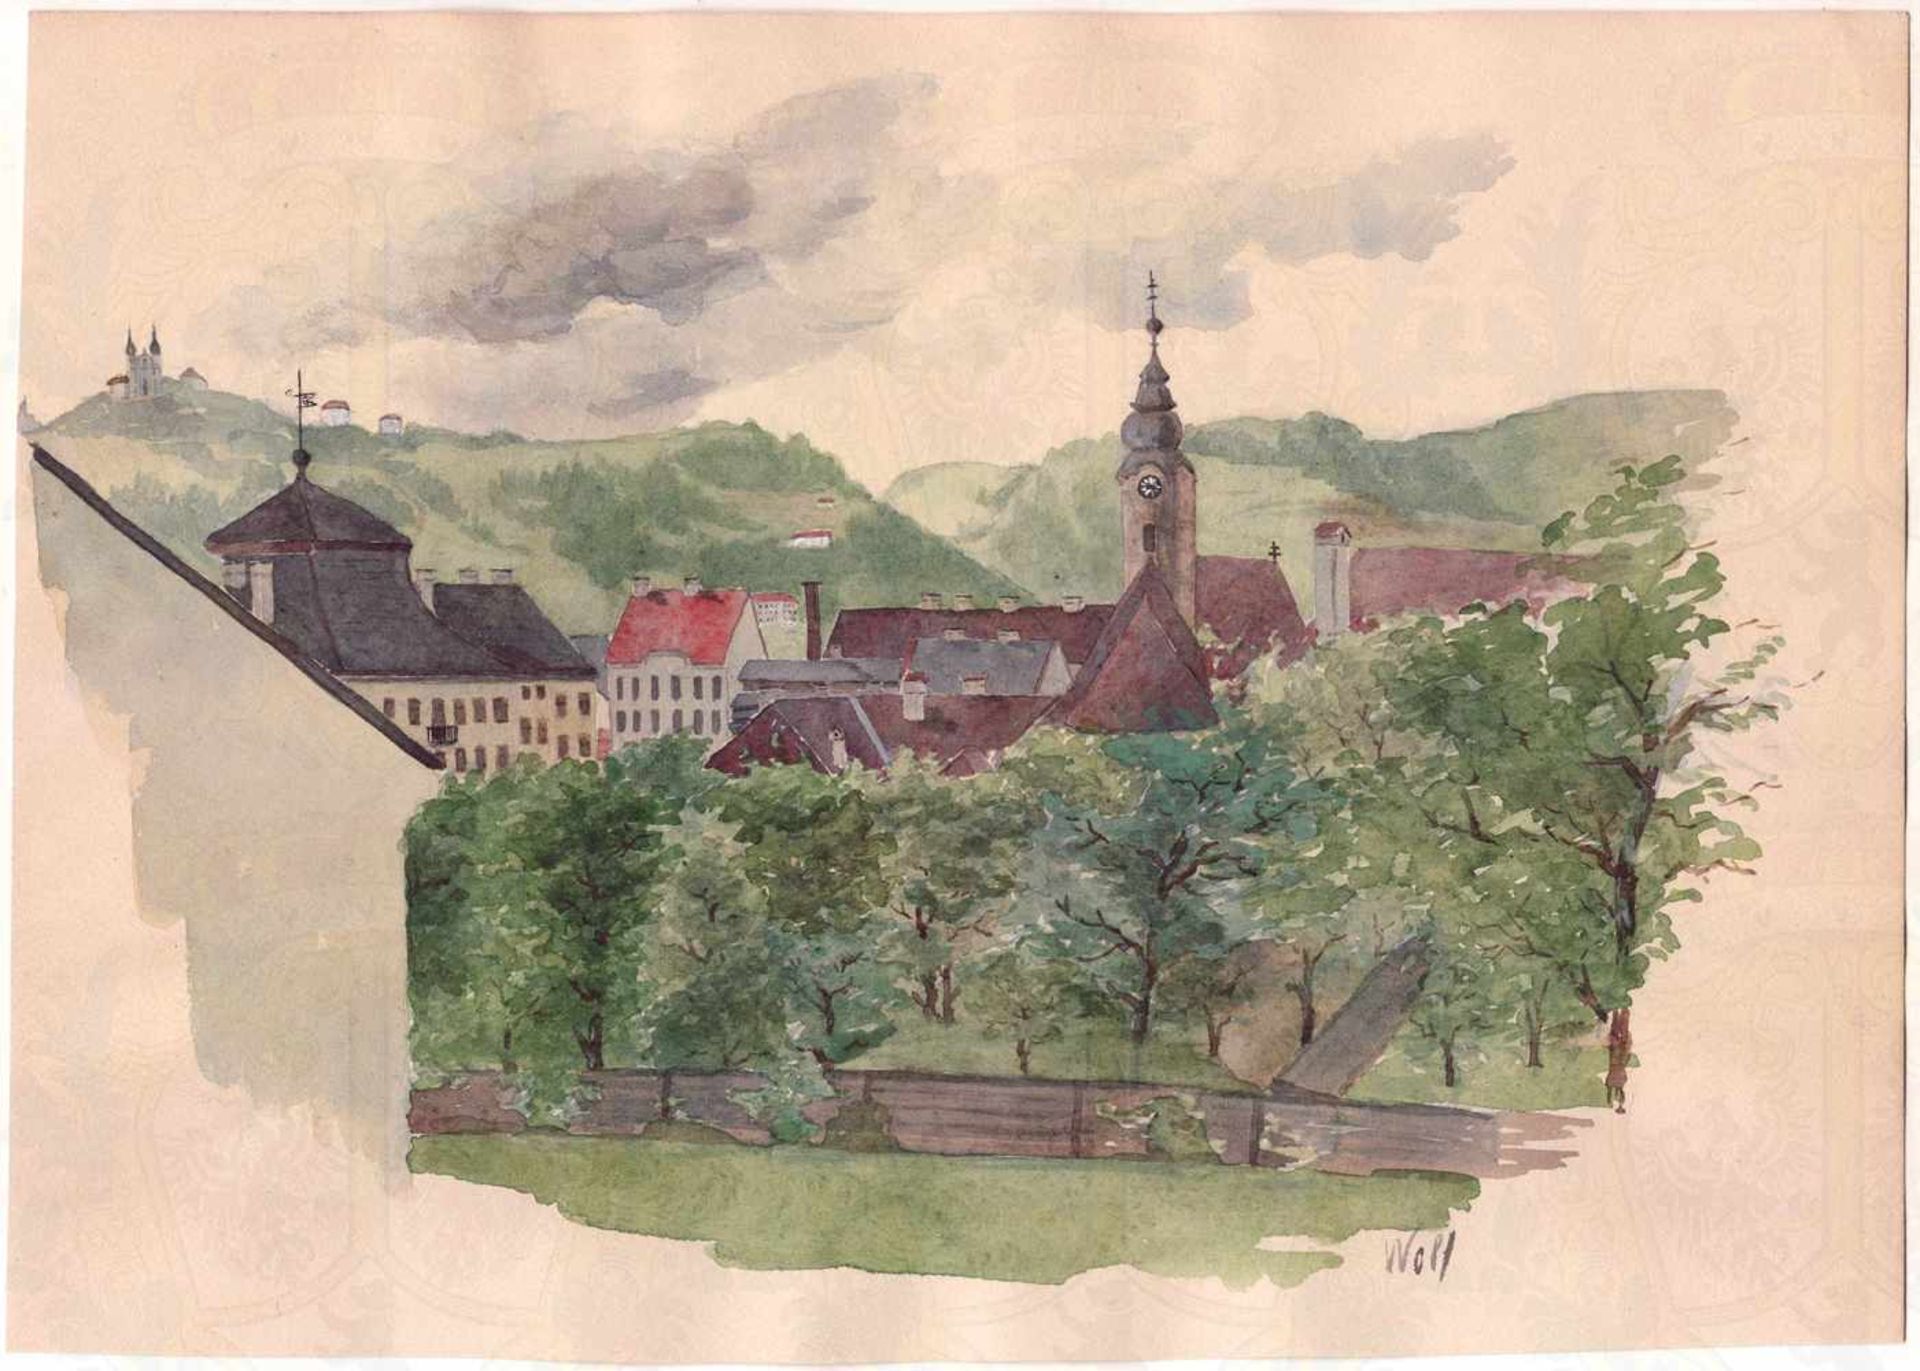 AQUARELL VON ADOLF HITLER, „St. Magdalenen bei Linz“, nördlicher Stadtteil von Linz, an der Donau